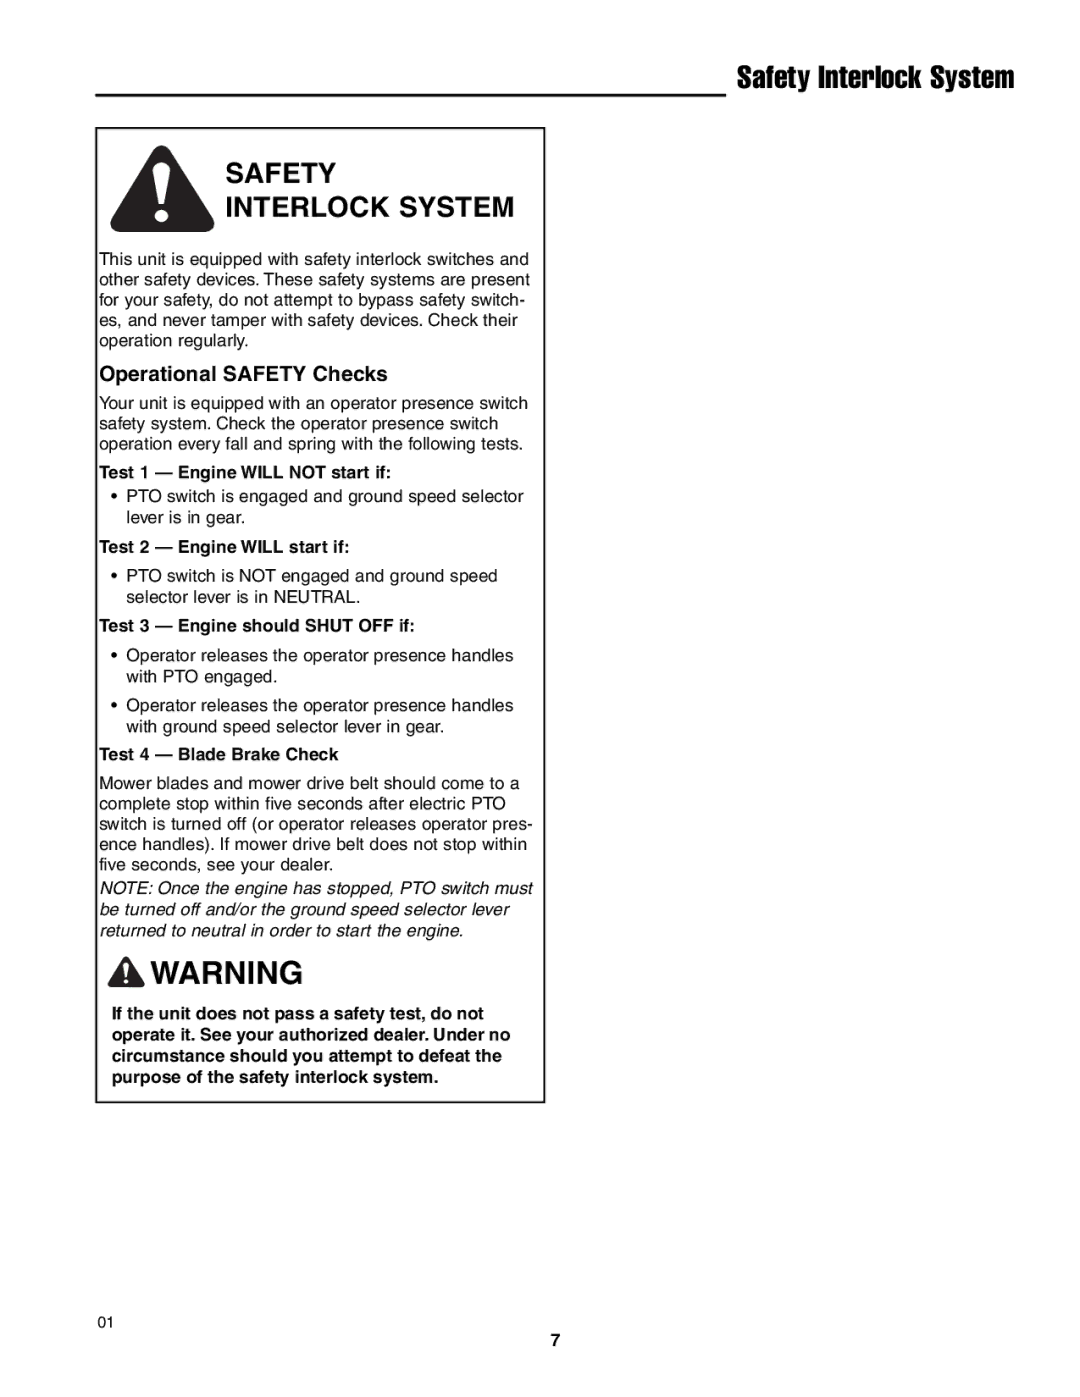 Ferris Industries BGF48KAV15, BGF36KAV15 manual Safety Interlock System, Operational Safety Checks 